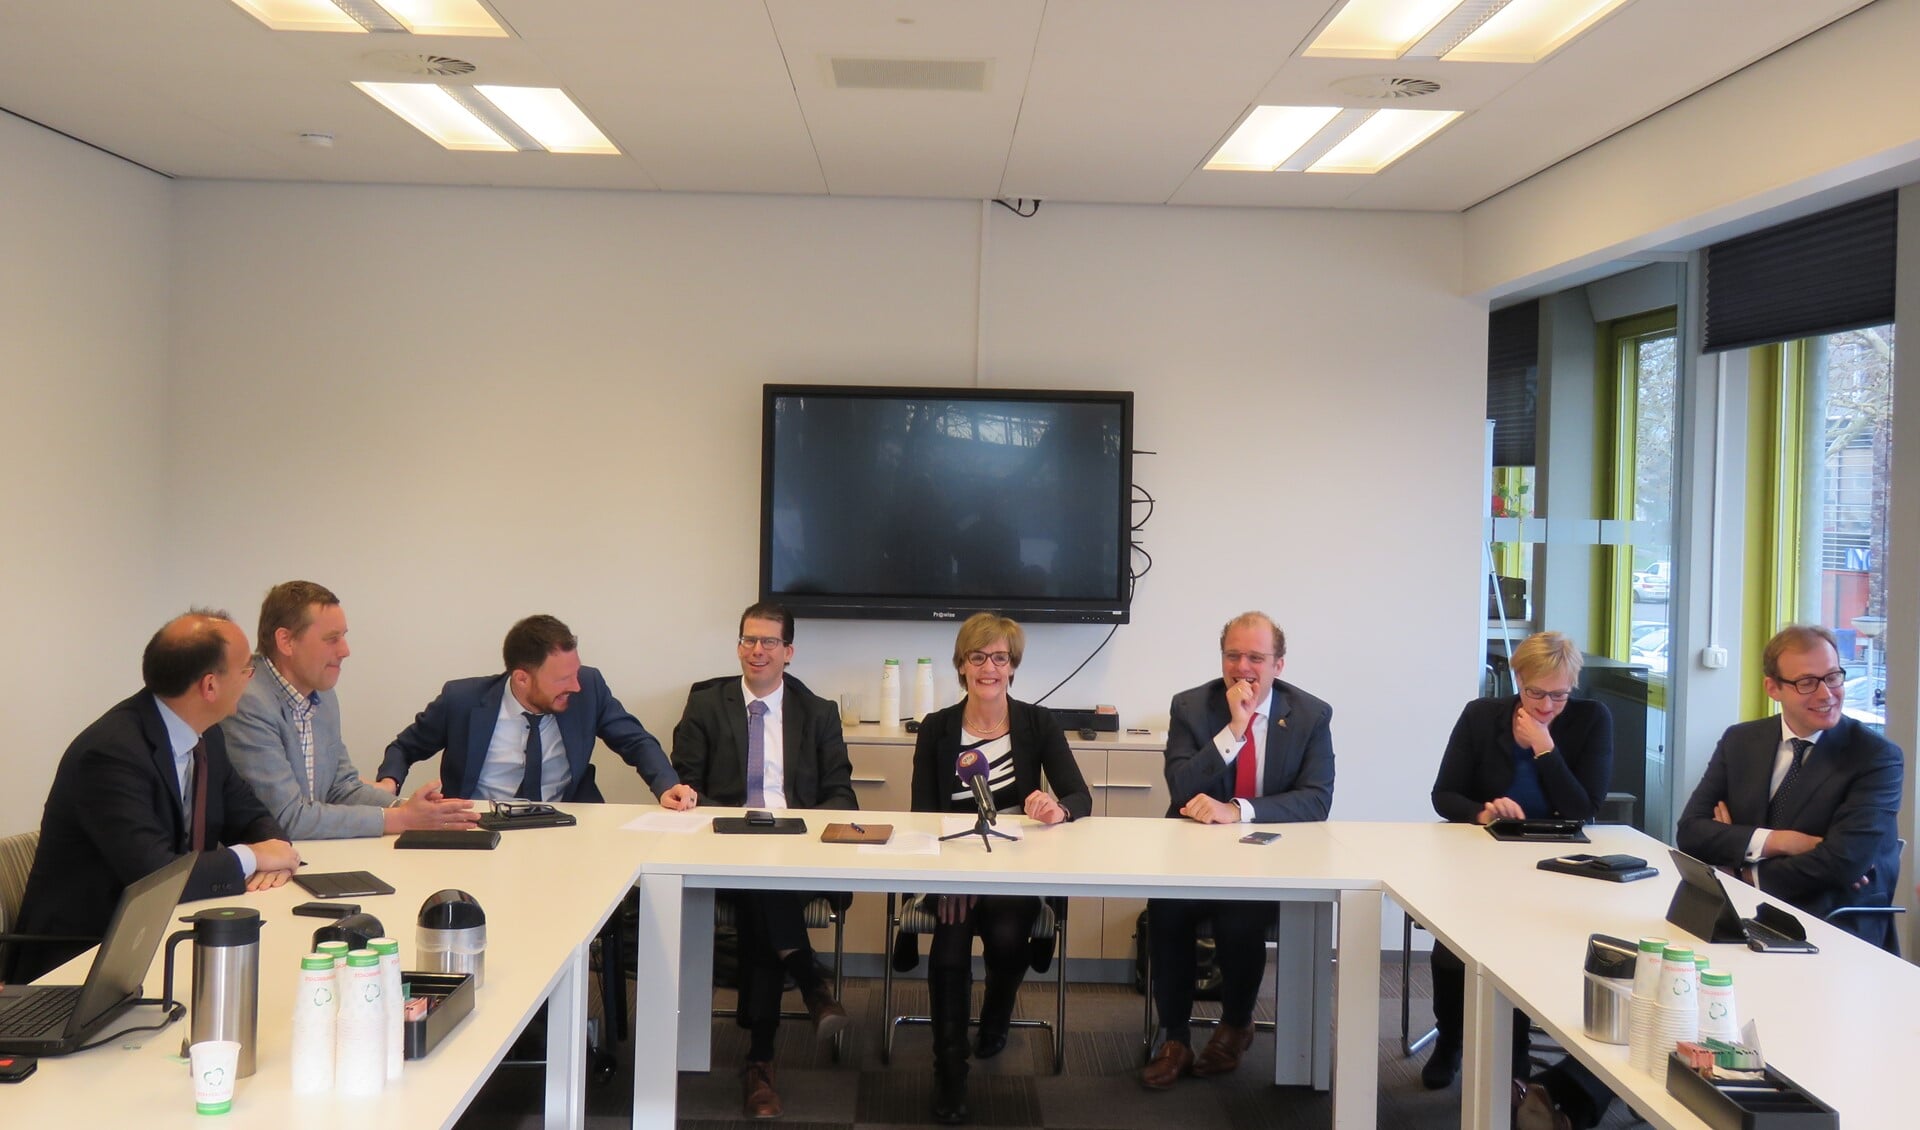 De burgemeesters van de acht gemeenten bij de presentatie van het plan tegen ondermijning. Foto: Bert Vinkenborg